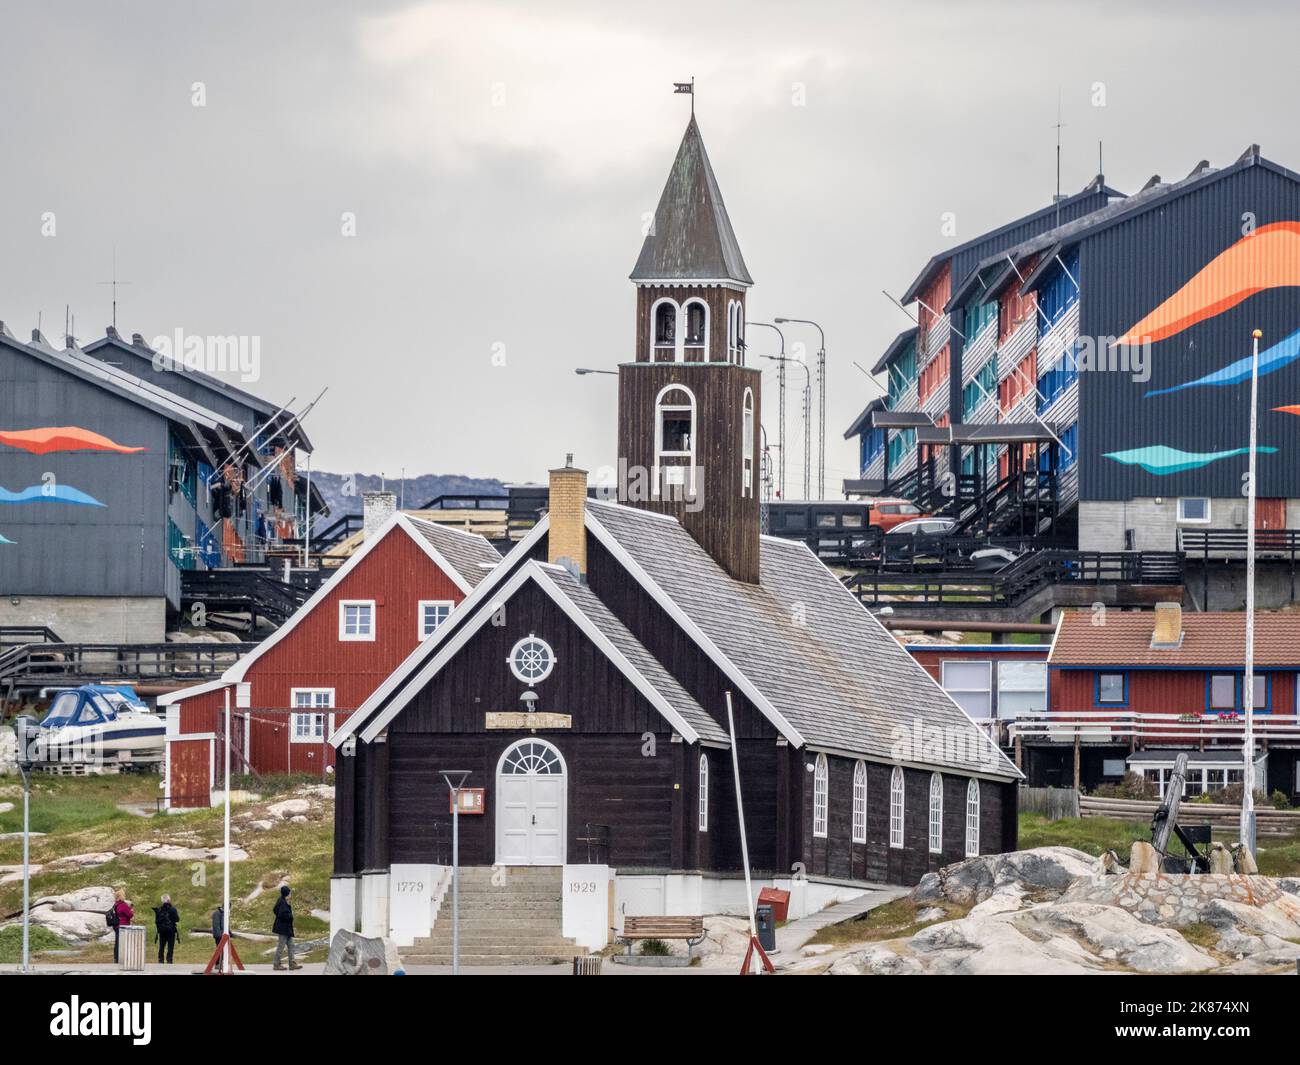 Vue sur l'église de Sion entourée de maisons peintes en couleurs dans la ville d'Ilulissat, Groenland, Danemark, régions polaires Banque D'Images